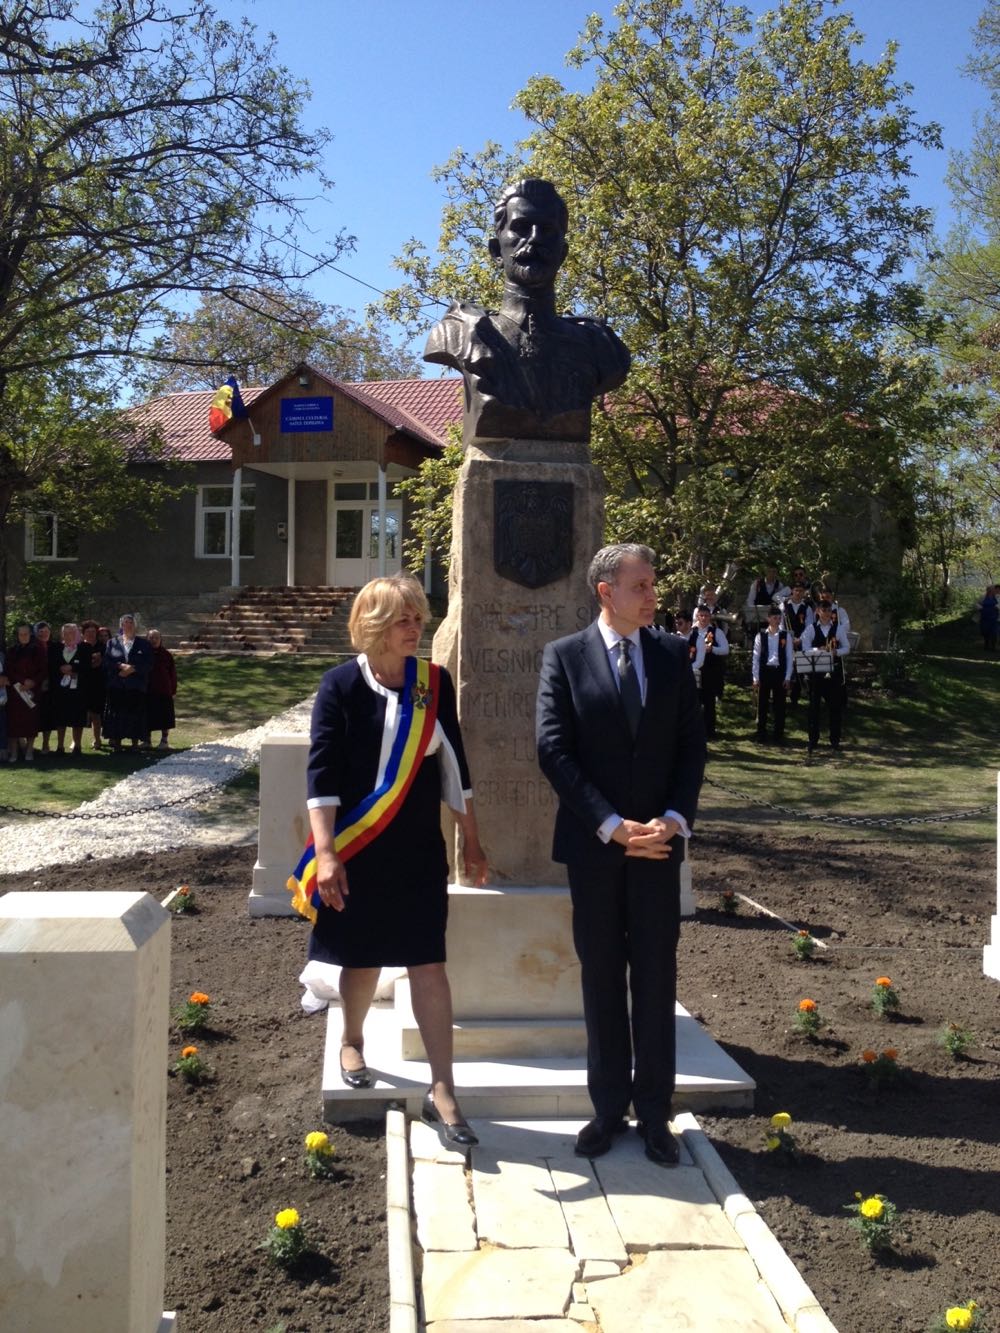 Principele Radu la sarbatoarea populara a dezvelirii bustului Regelui Ferdinand I in satul Telipova din raionul Soroca, 6 mai 2017